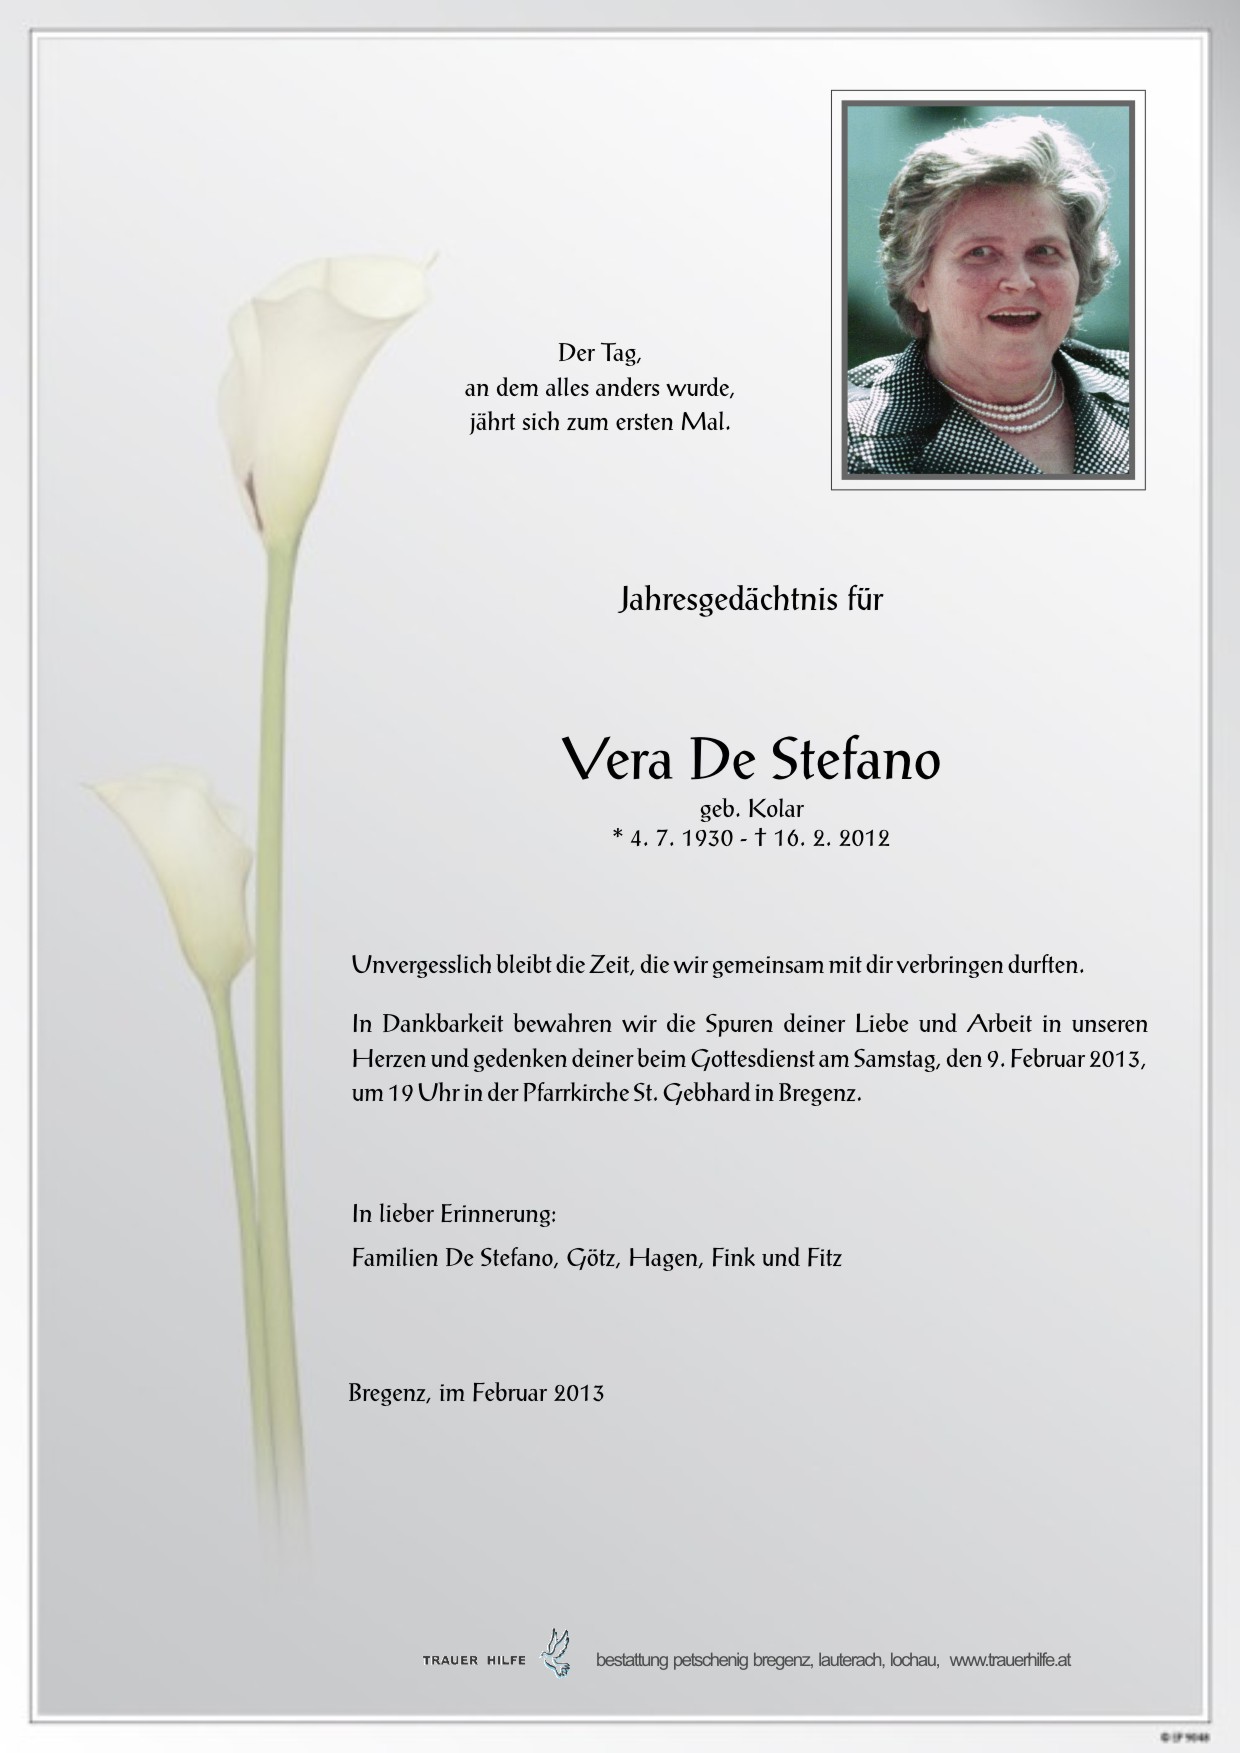 Vera De Stefano